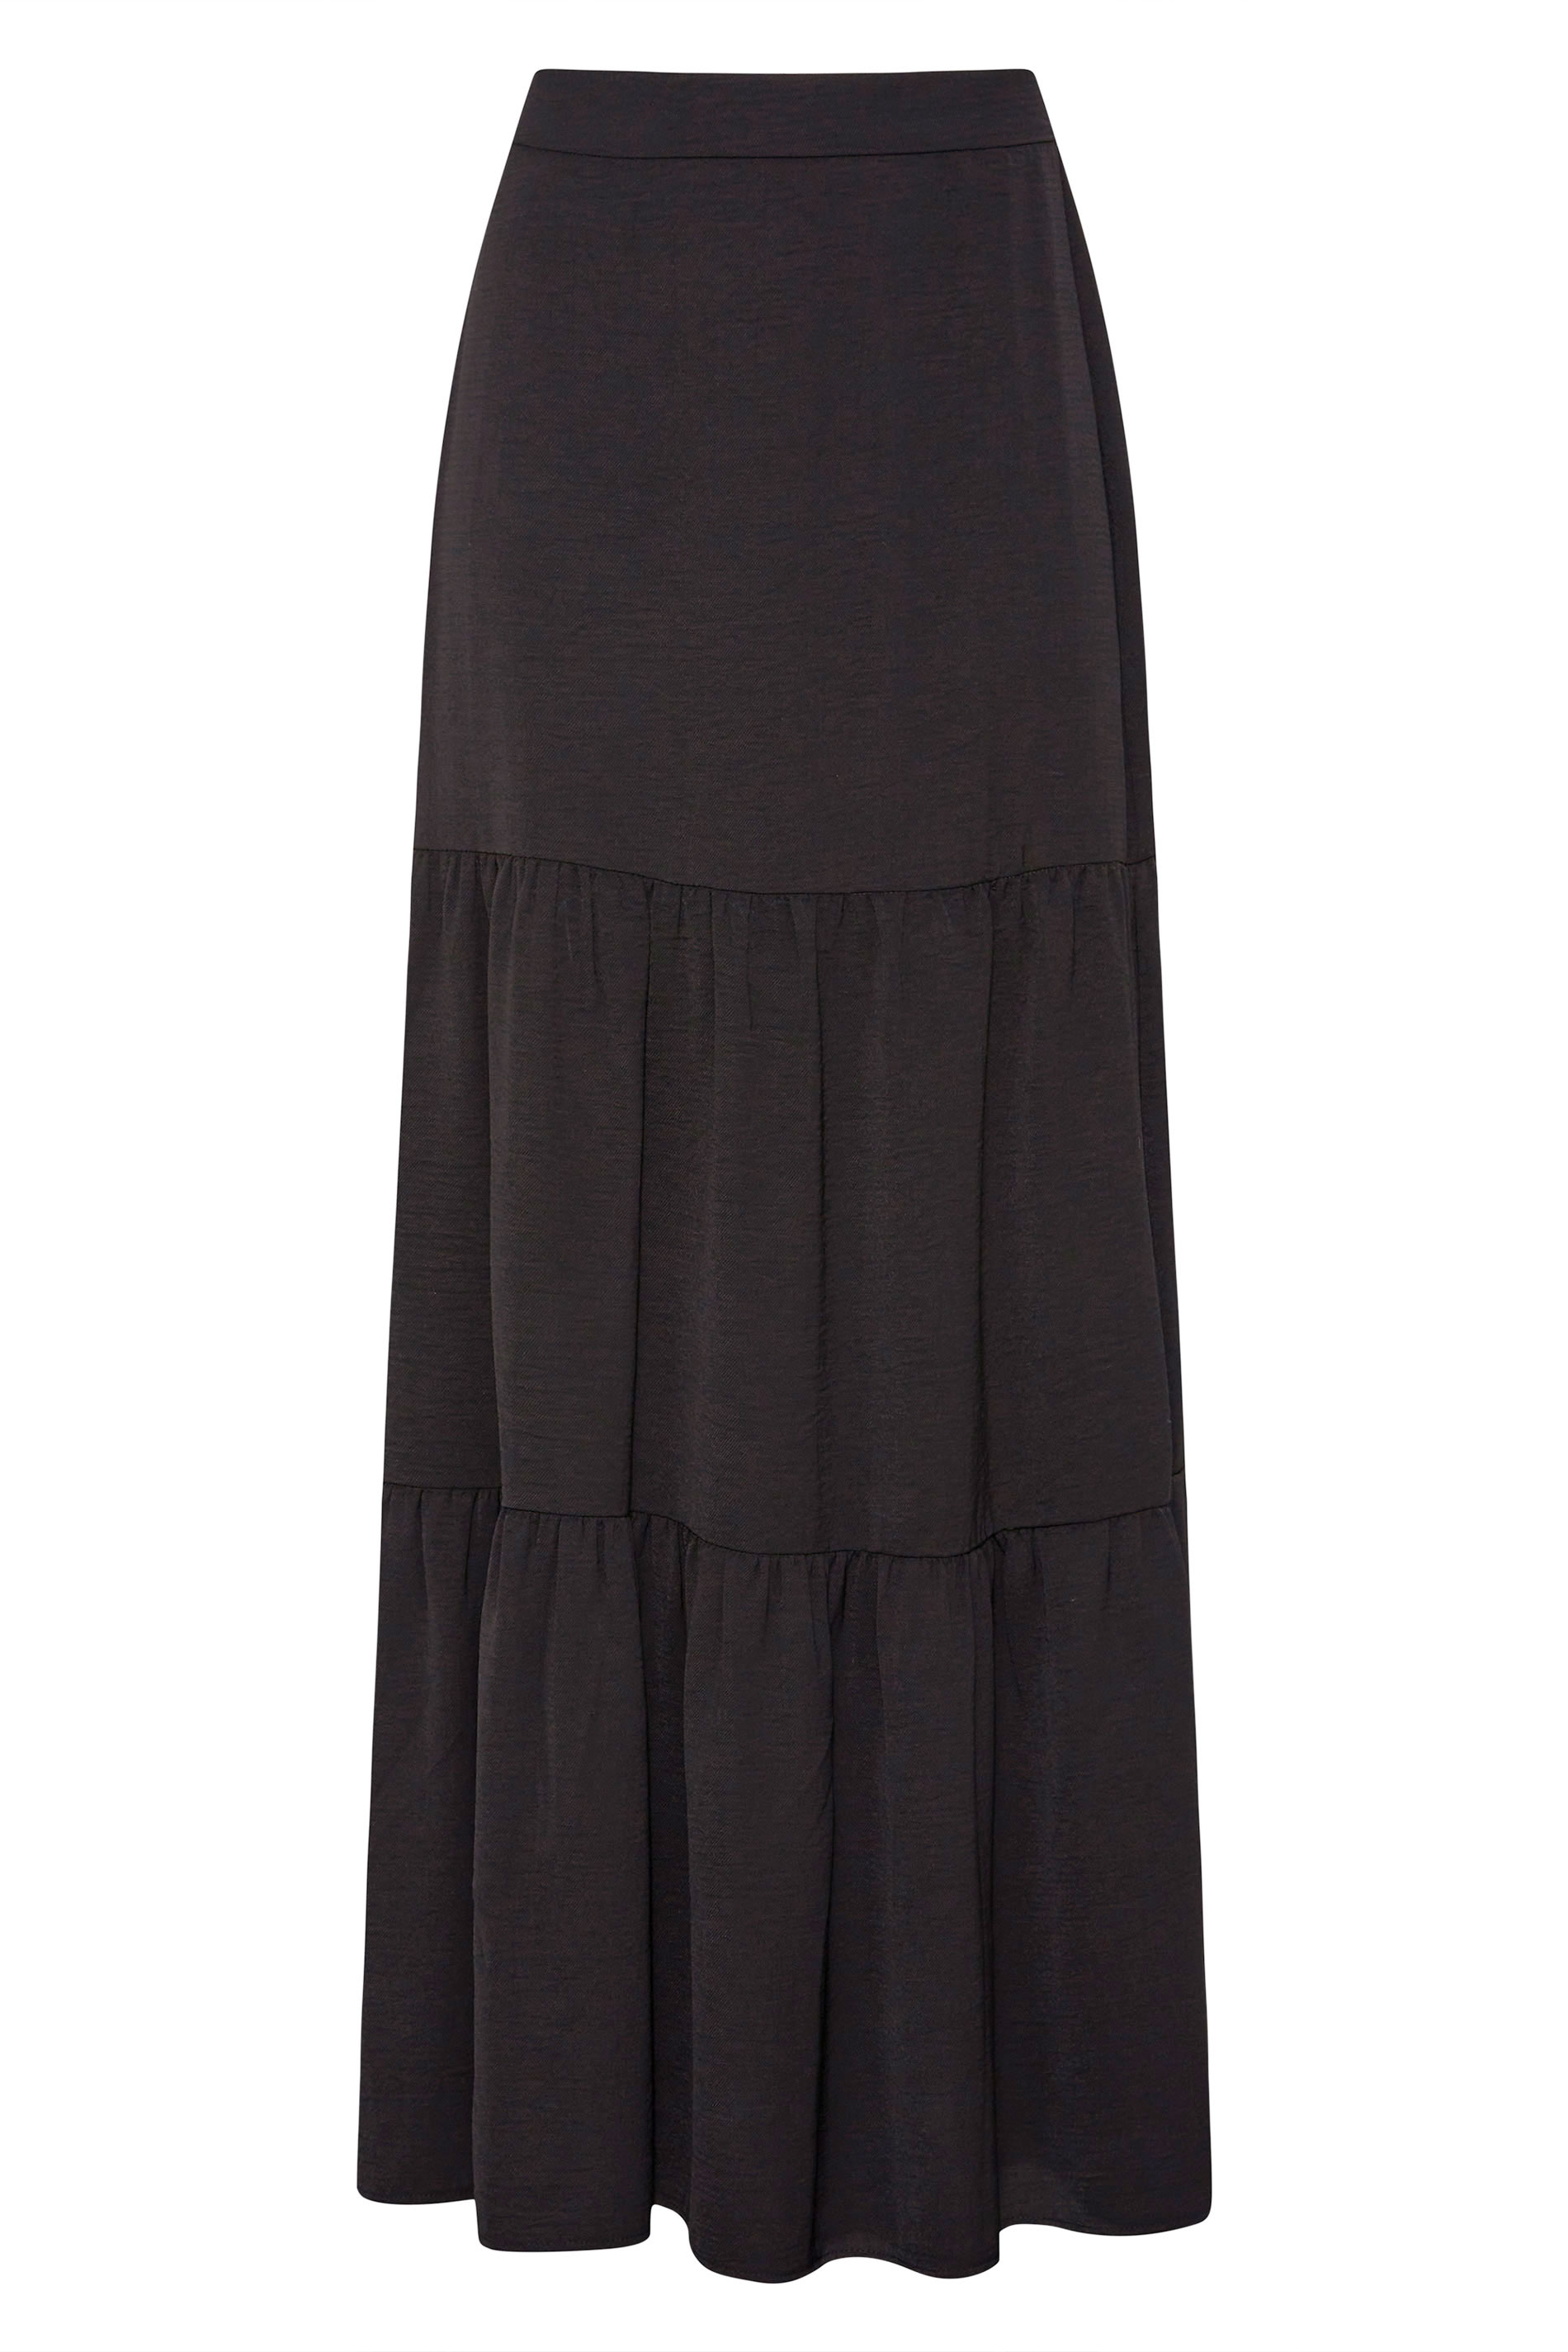 LTS Tall Women's Black Twill Tiered Maxi Skirt | Long Tall Sally